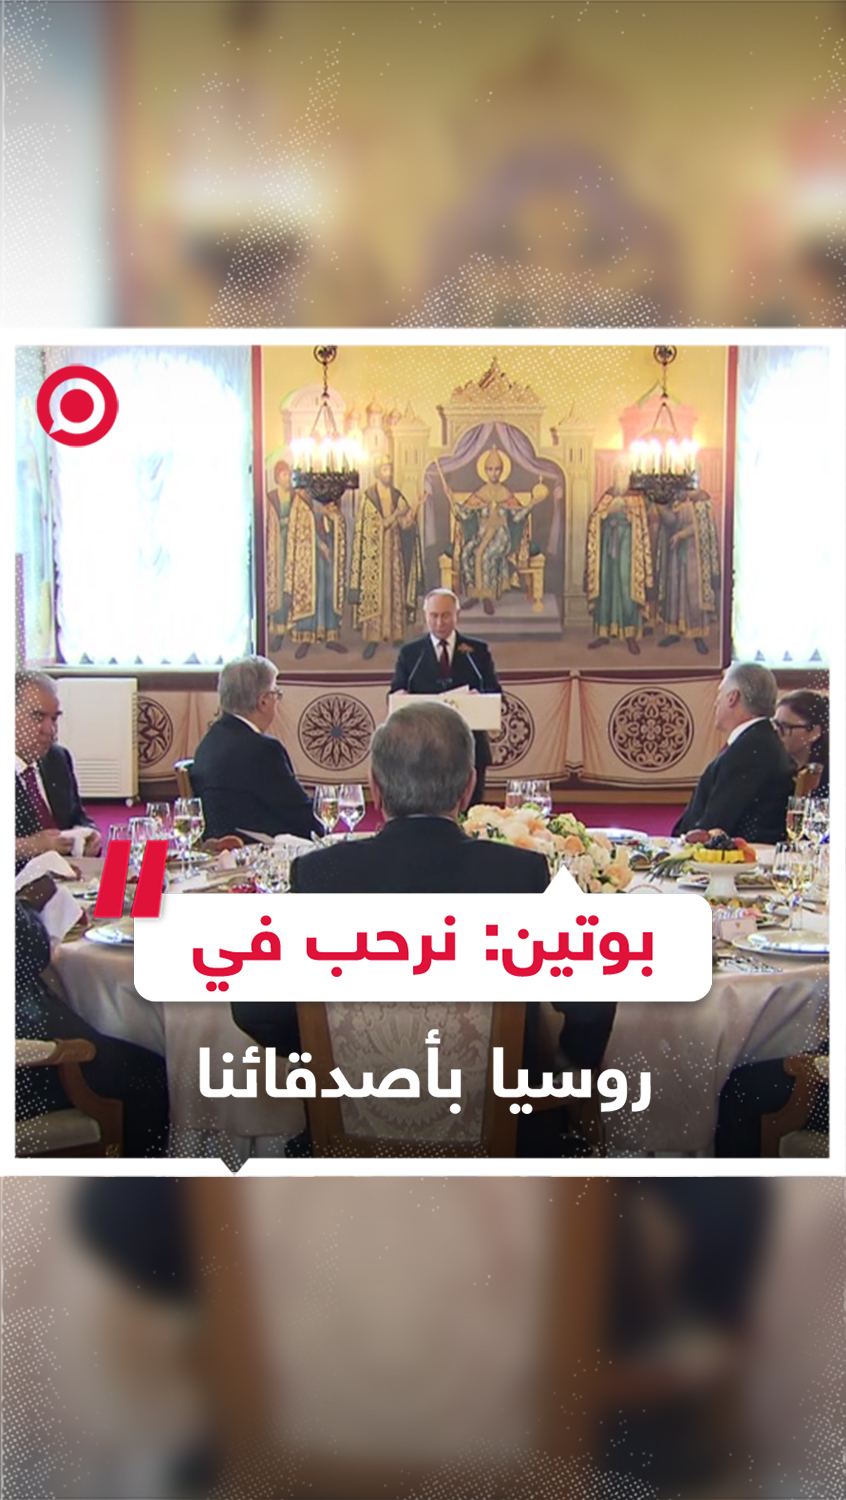 بوتين يرحب برؤساء الدول المدعوين لحضور احتفال عيد النصر